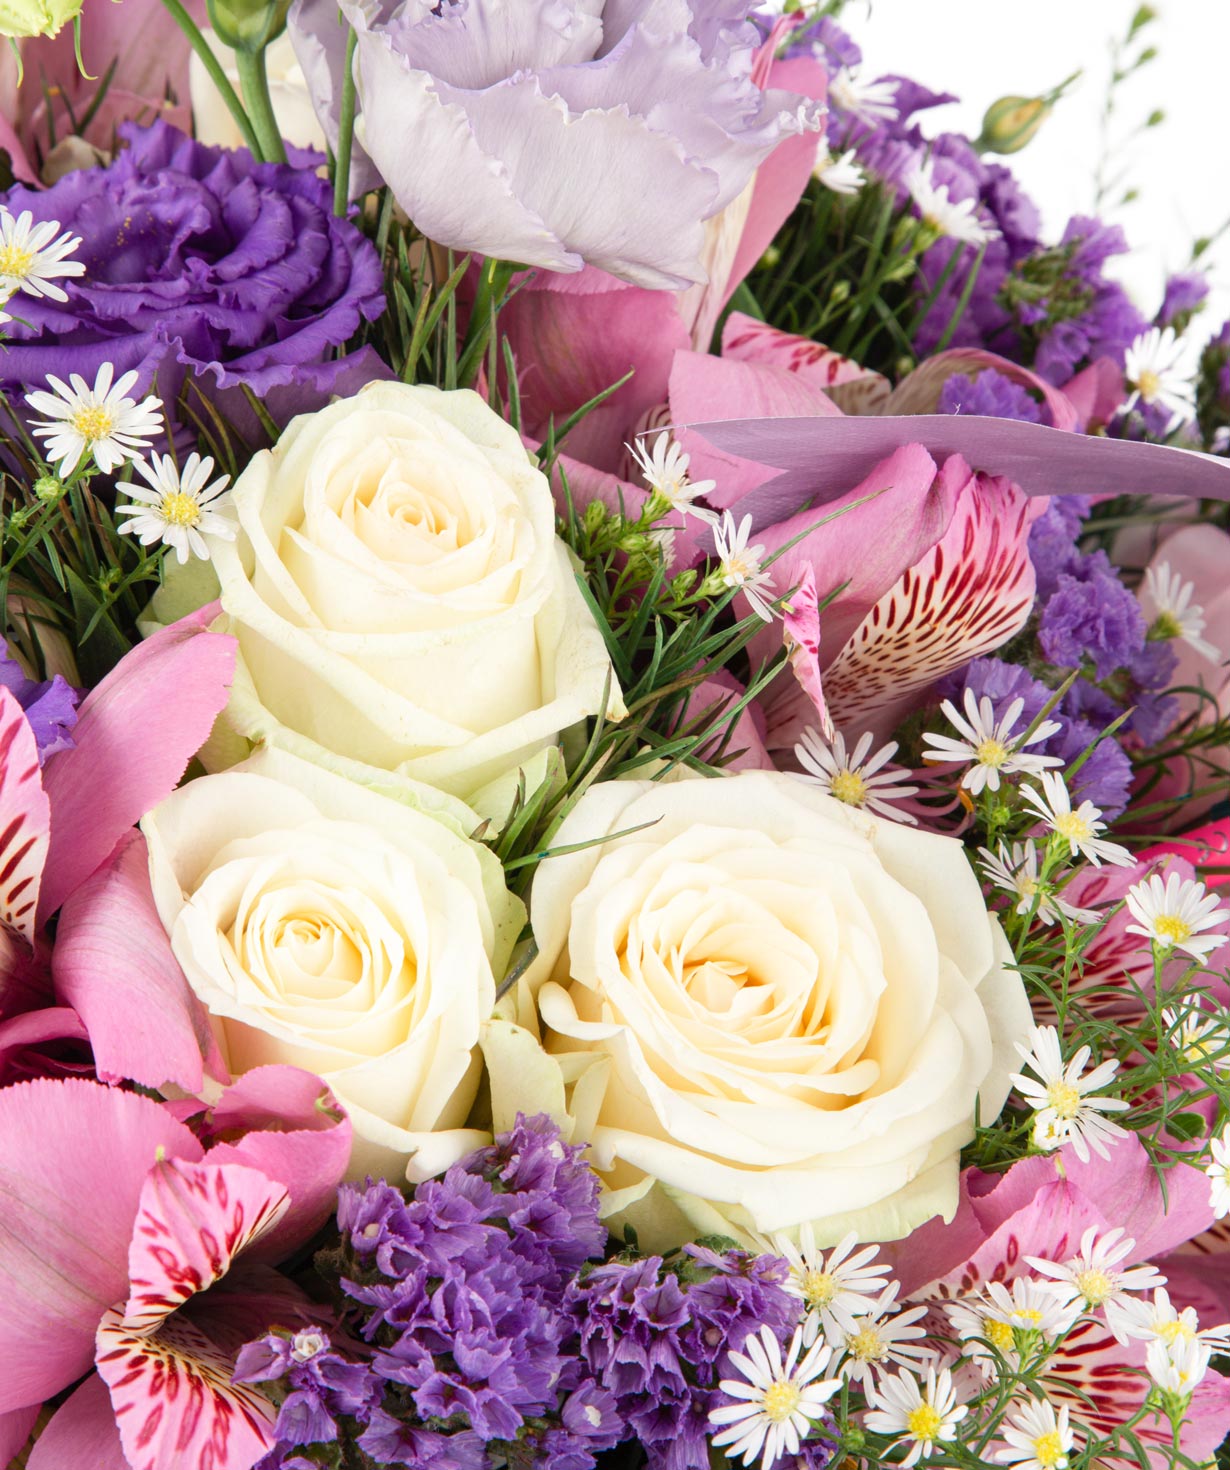 Ծաղկեփունջ «Դուբլին» վարդերով, լիզիանտուսներով և ալստրոմերիաներով